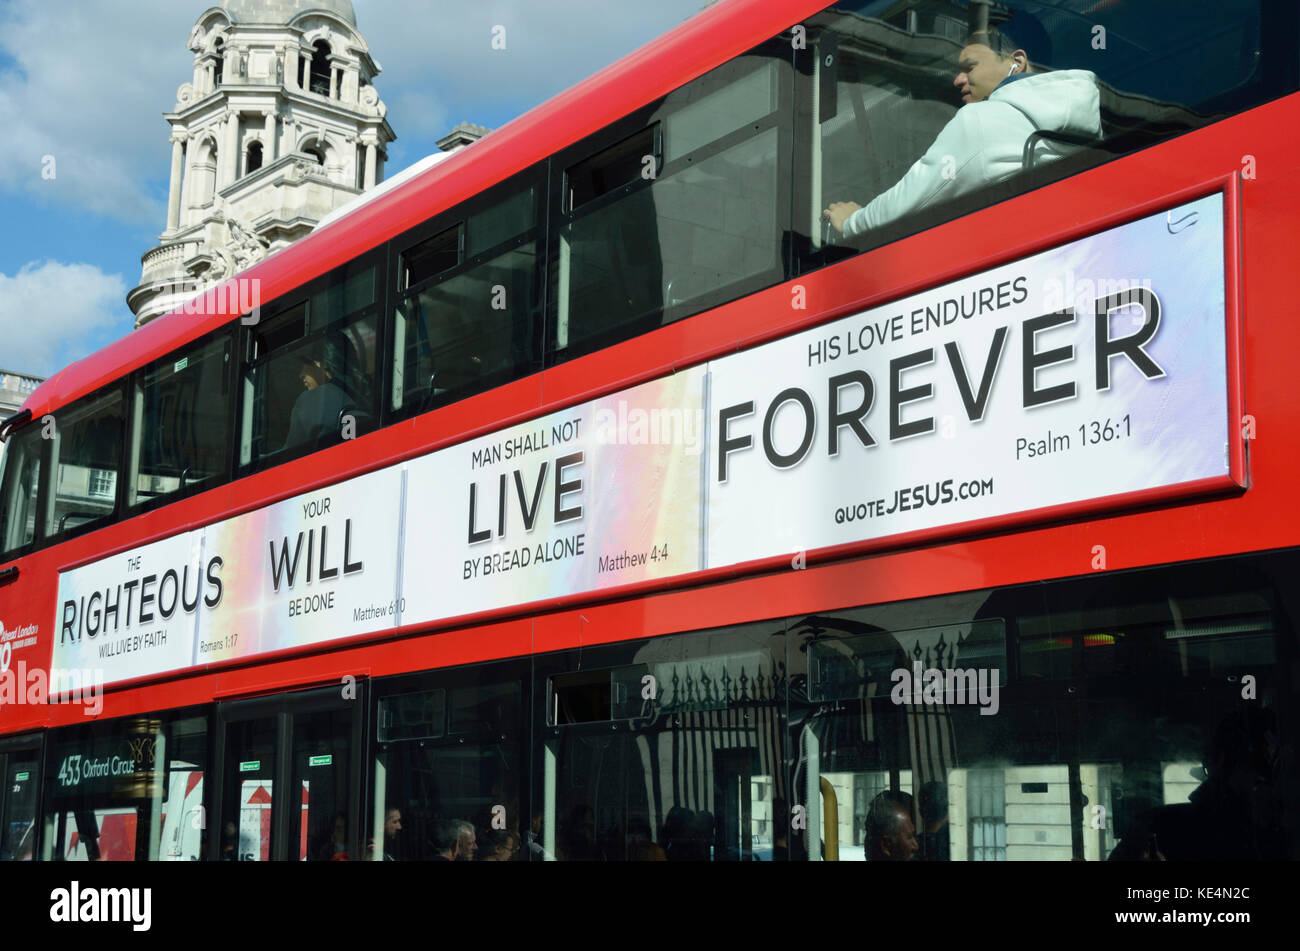 "Gerechte wird leben in Ewigkeit" christlichen religiösen Slogan auf der Seite von einem Bus, London, UK. Stockfoto